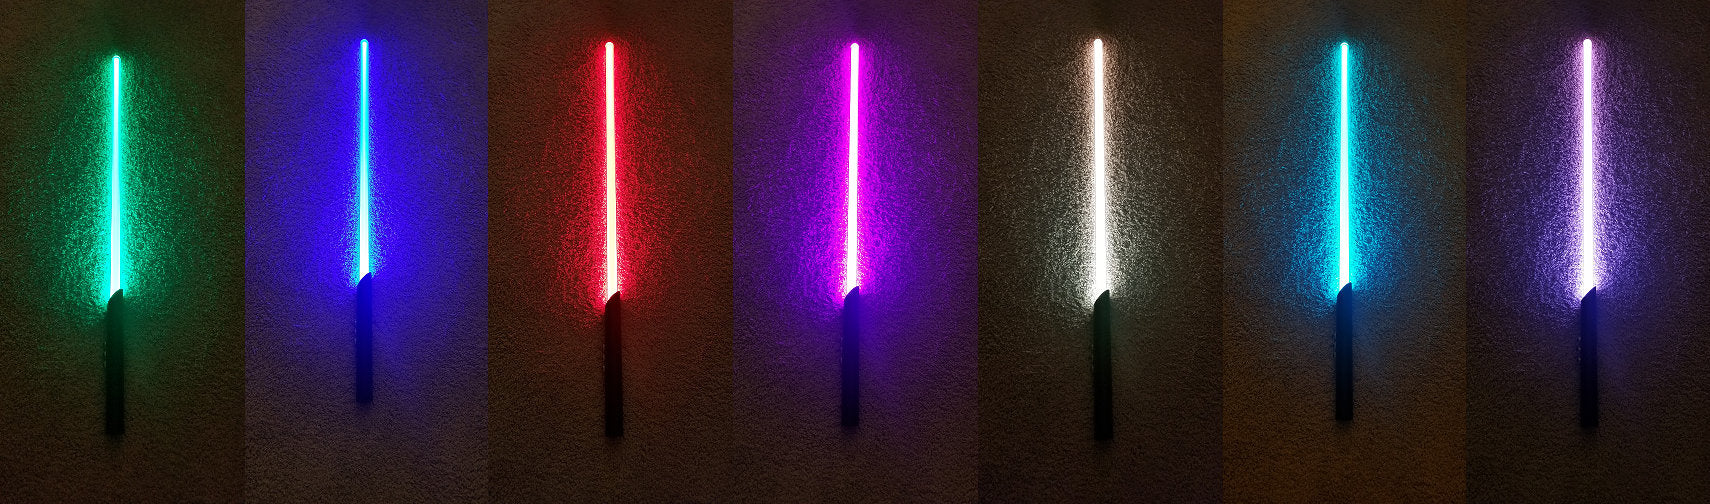 Lightsaber Lamp Color Change Lightsaber RGB Lamp Light wall Plug USB Light Saber Aluminum Hilt 7 Colors Star Wars Gift Bossaber "The Raver"